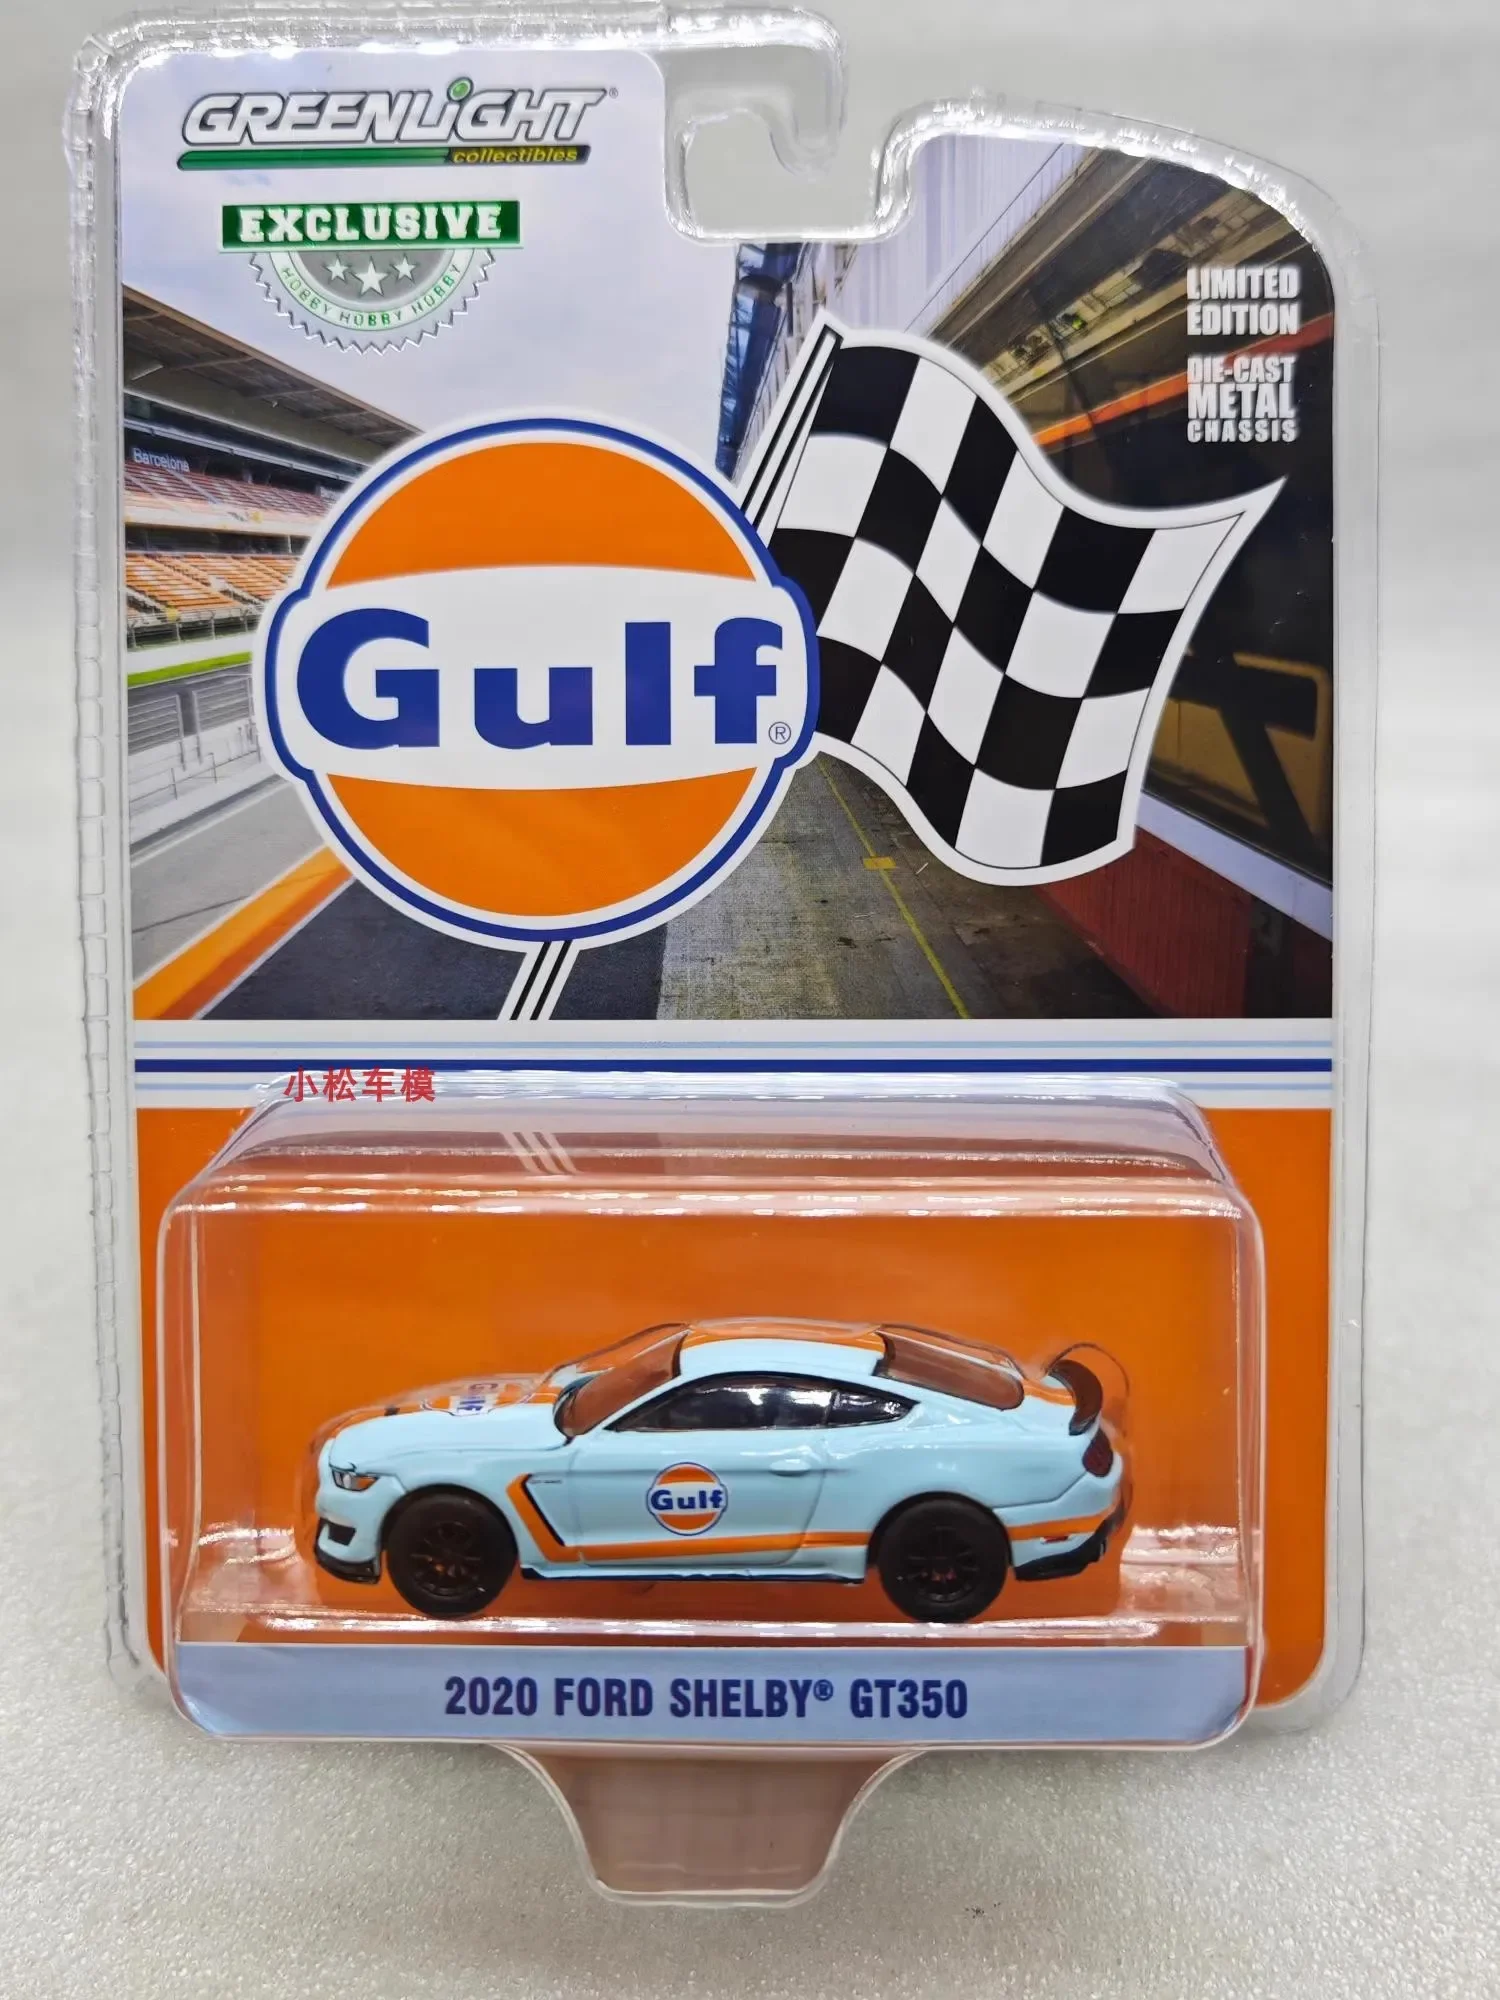 Модель автомобиля Ford Shelby GT350, литый под давлением, из металлического сплава, игрушечная машинка для подарочной коллекции, 1:64, 20220, W1249